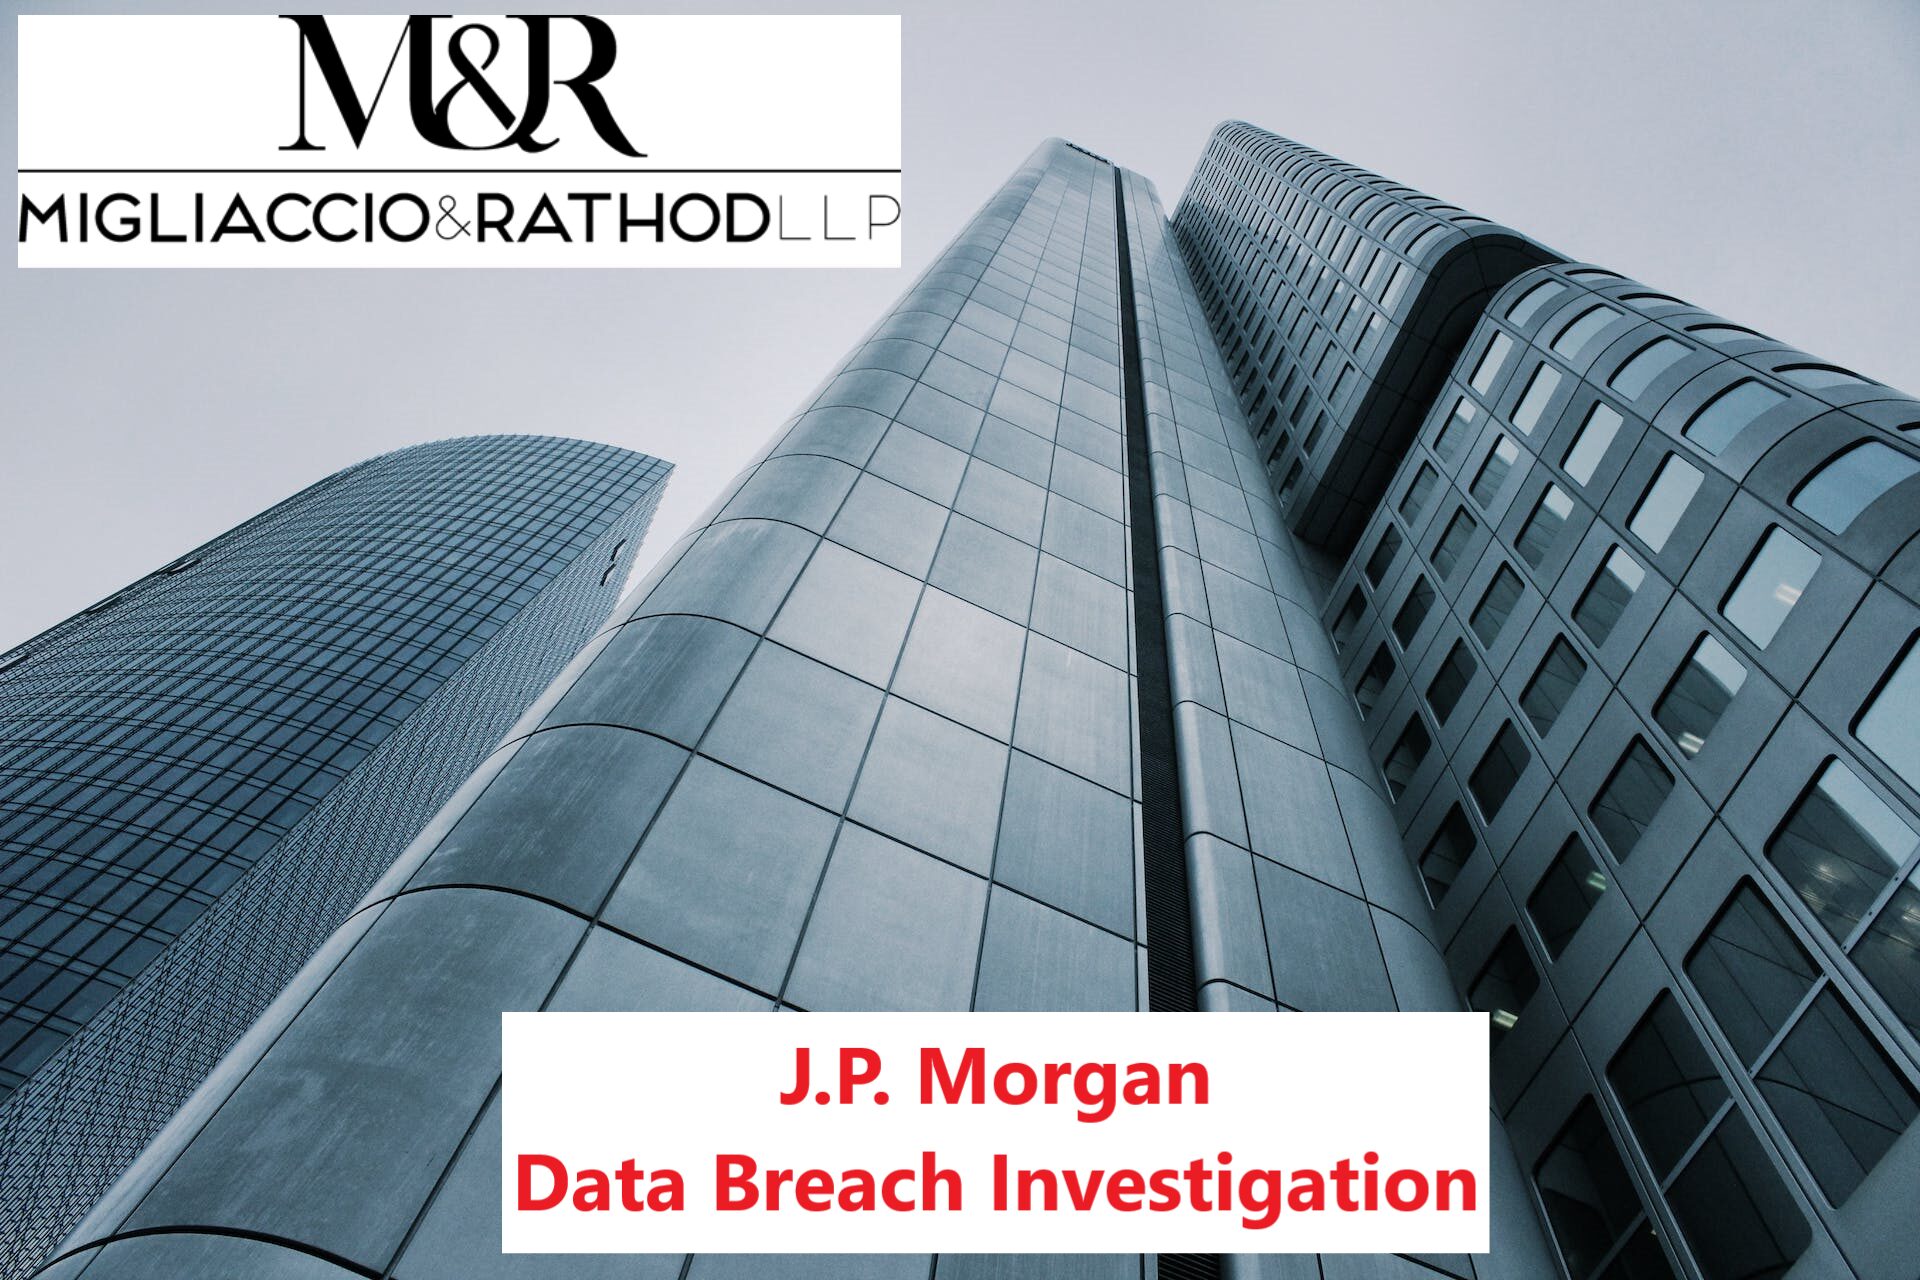 J.P. Data Breach Investigation Migliaccio & Rathod LLP